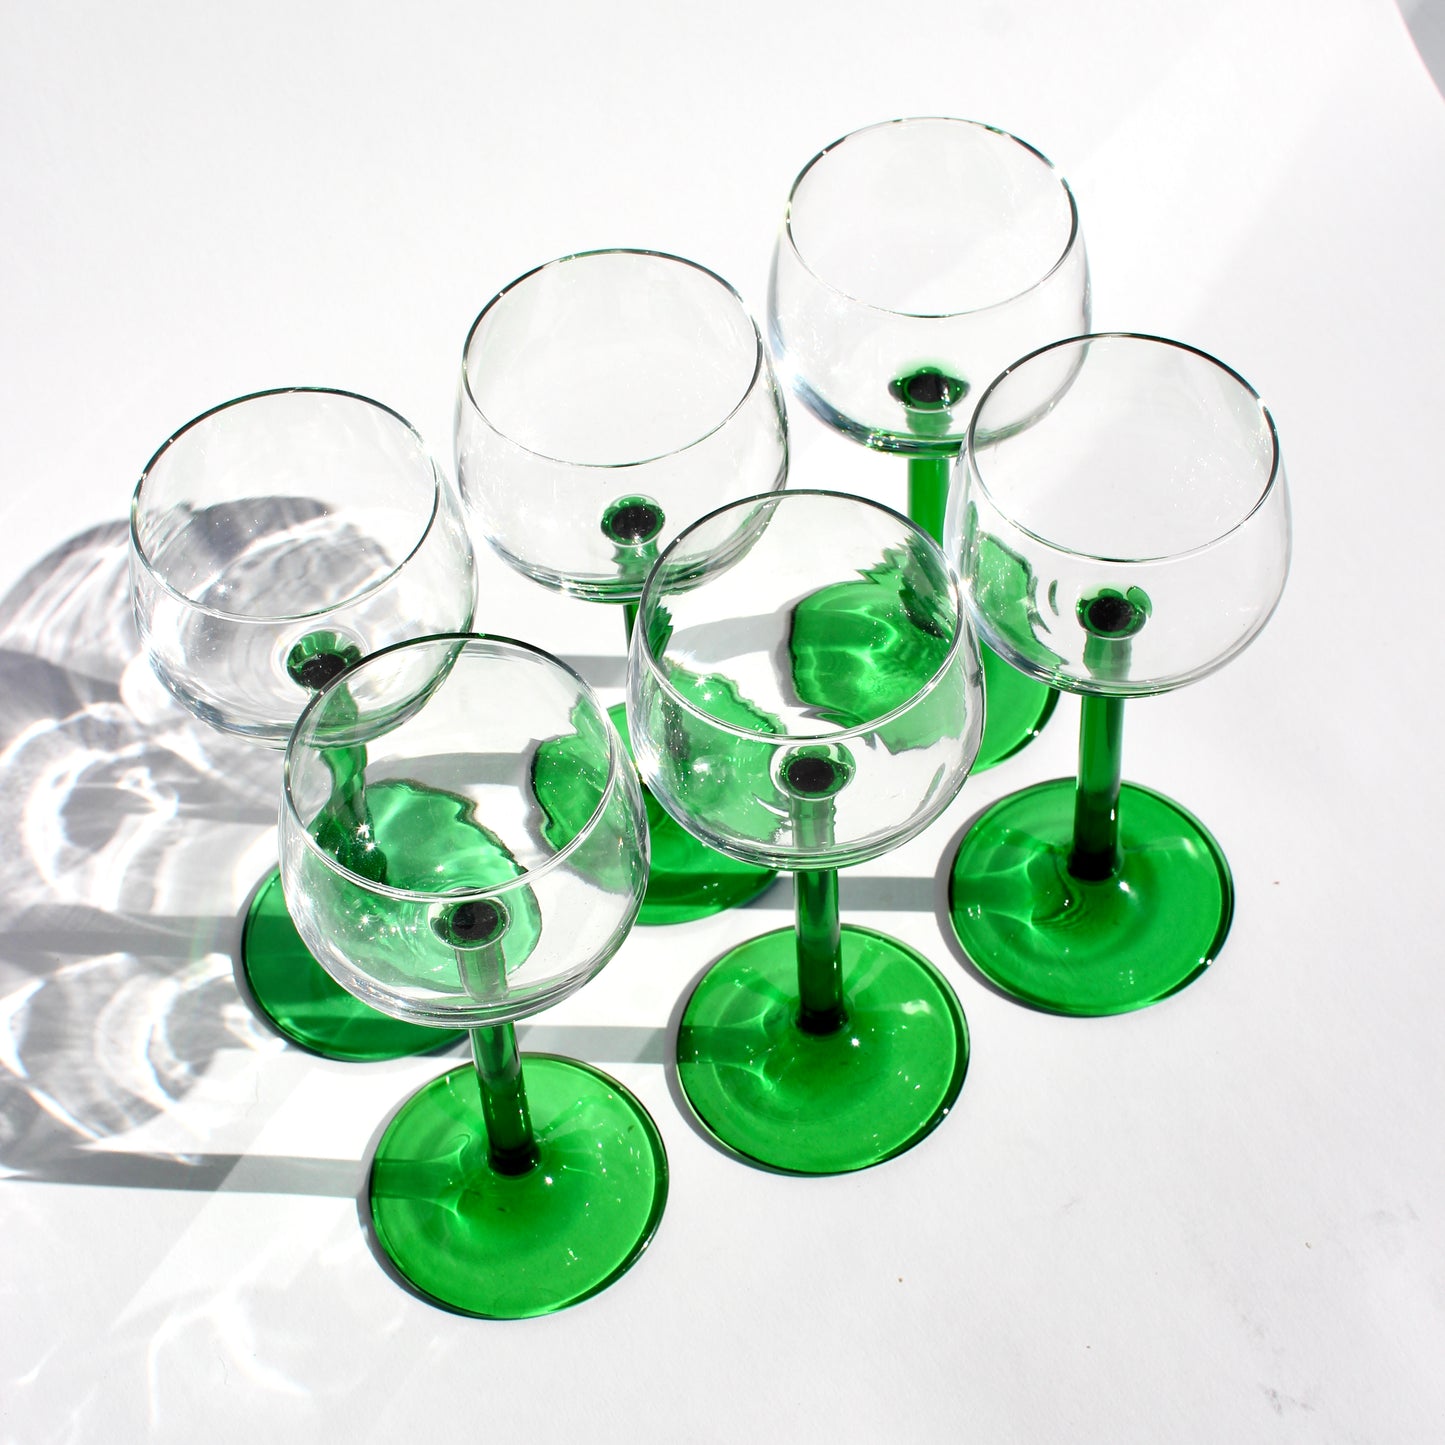 leggy green-stem glasses (2)